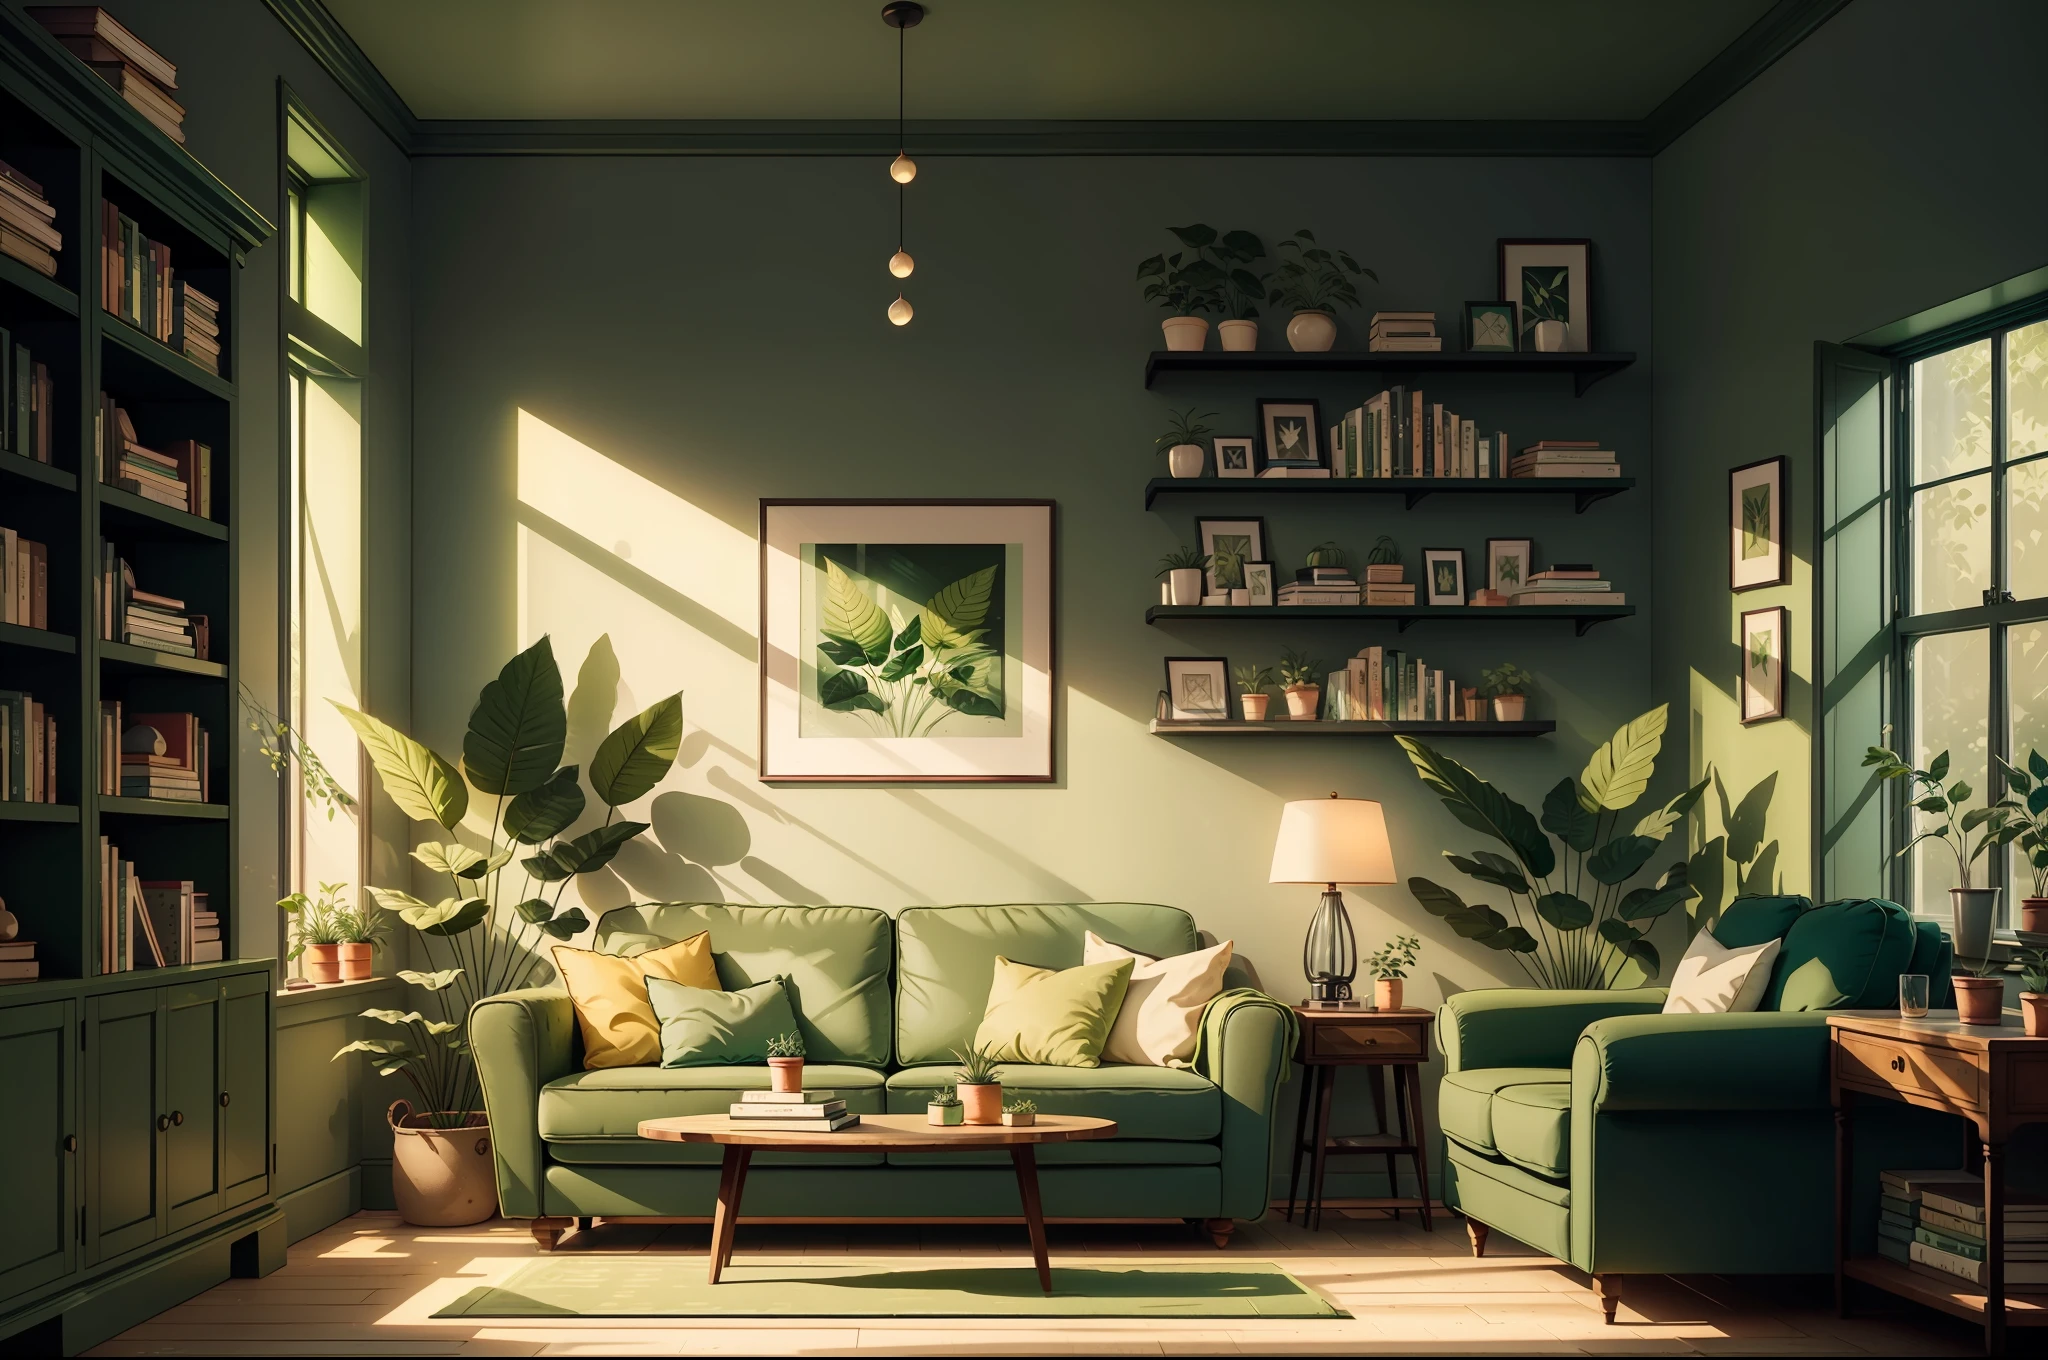 緑のソファと壁に緑の植物、本棚に本が置かれたリビングルーム, 美しいイメージの映画のシーンを描いた絵, 太陽の光が差し込む明るい環境